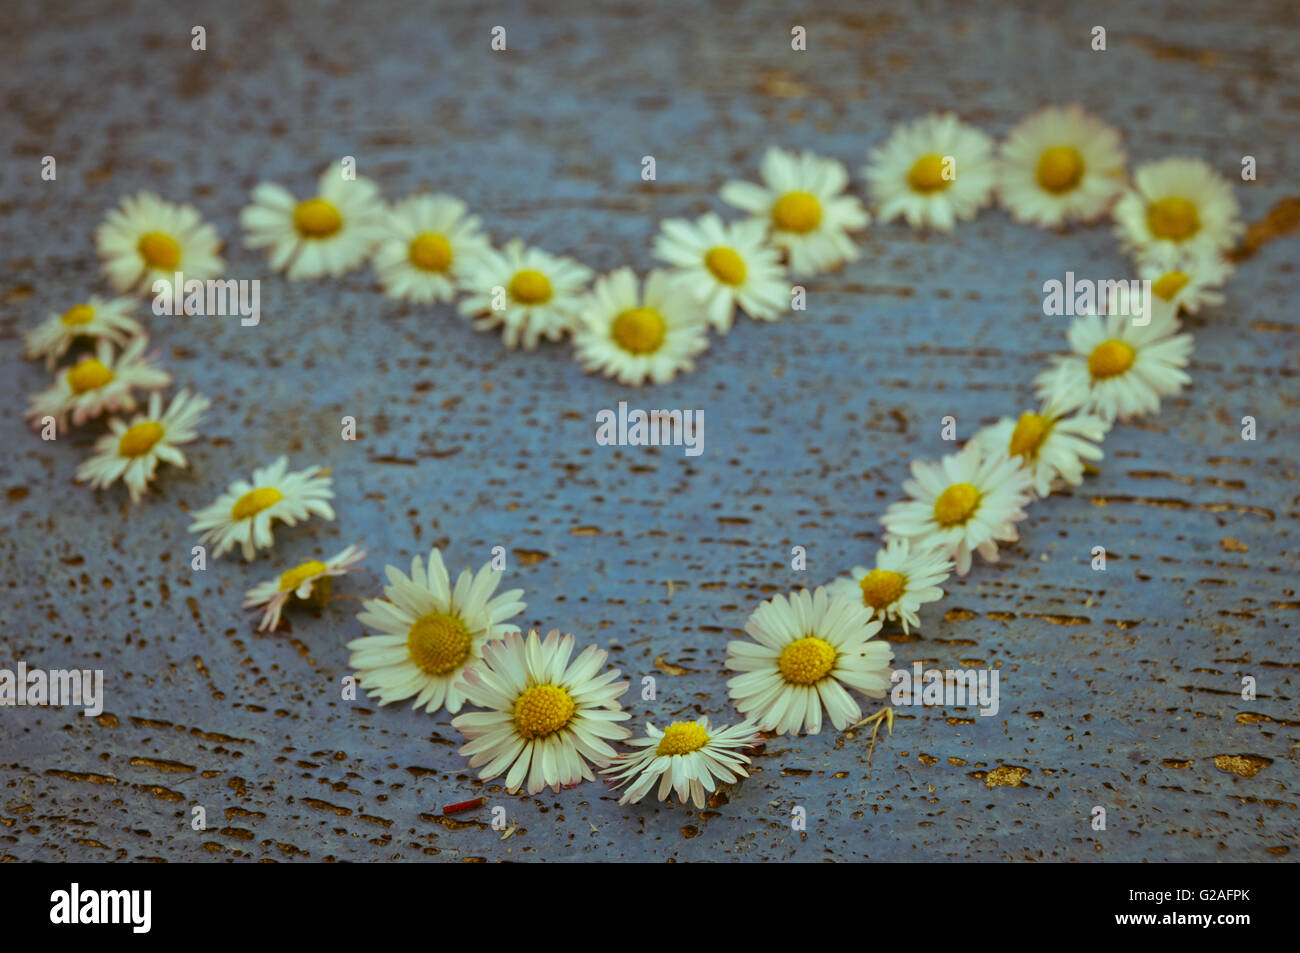 Forma corazón formado de daisy flores sobre una vieja textura fondo color azul turquesa vintage de fondo Foto de stock